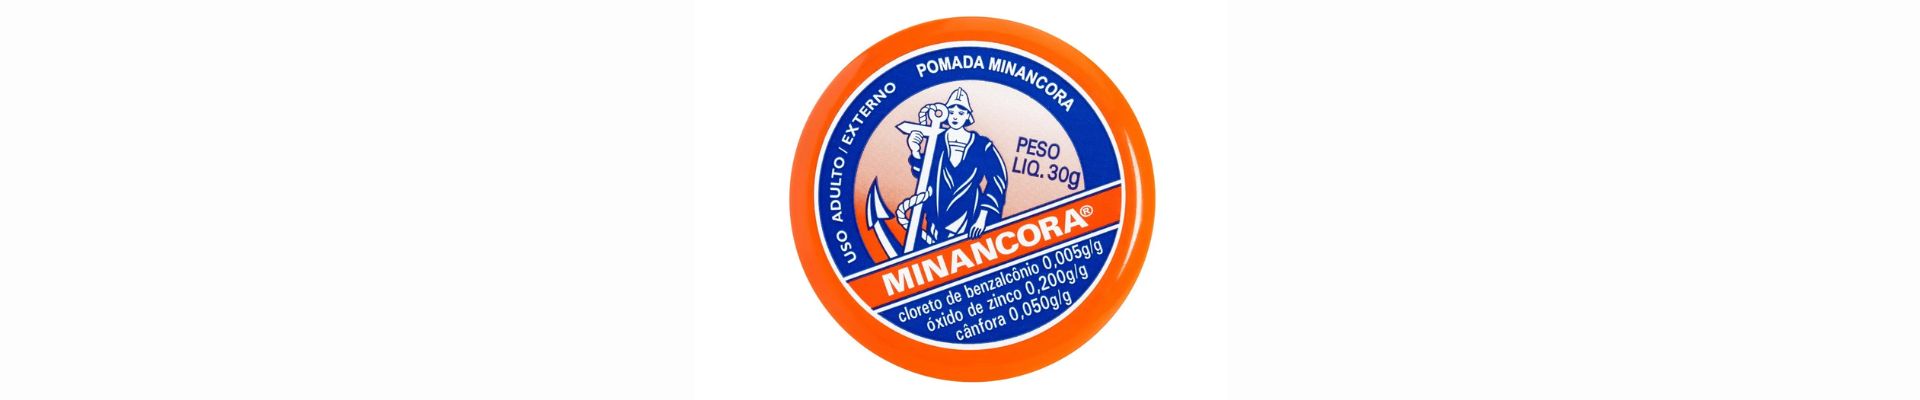 Após 100 anos, Minancora faz mudanças em seu logotipo